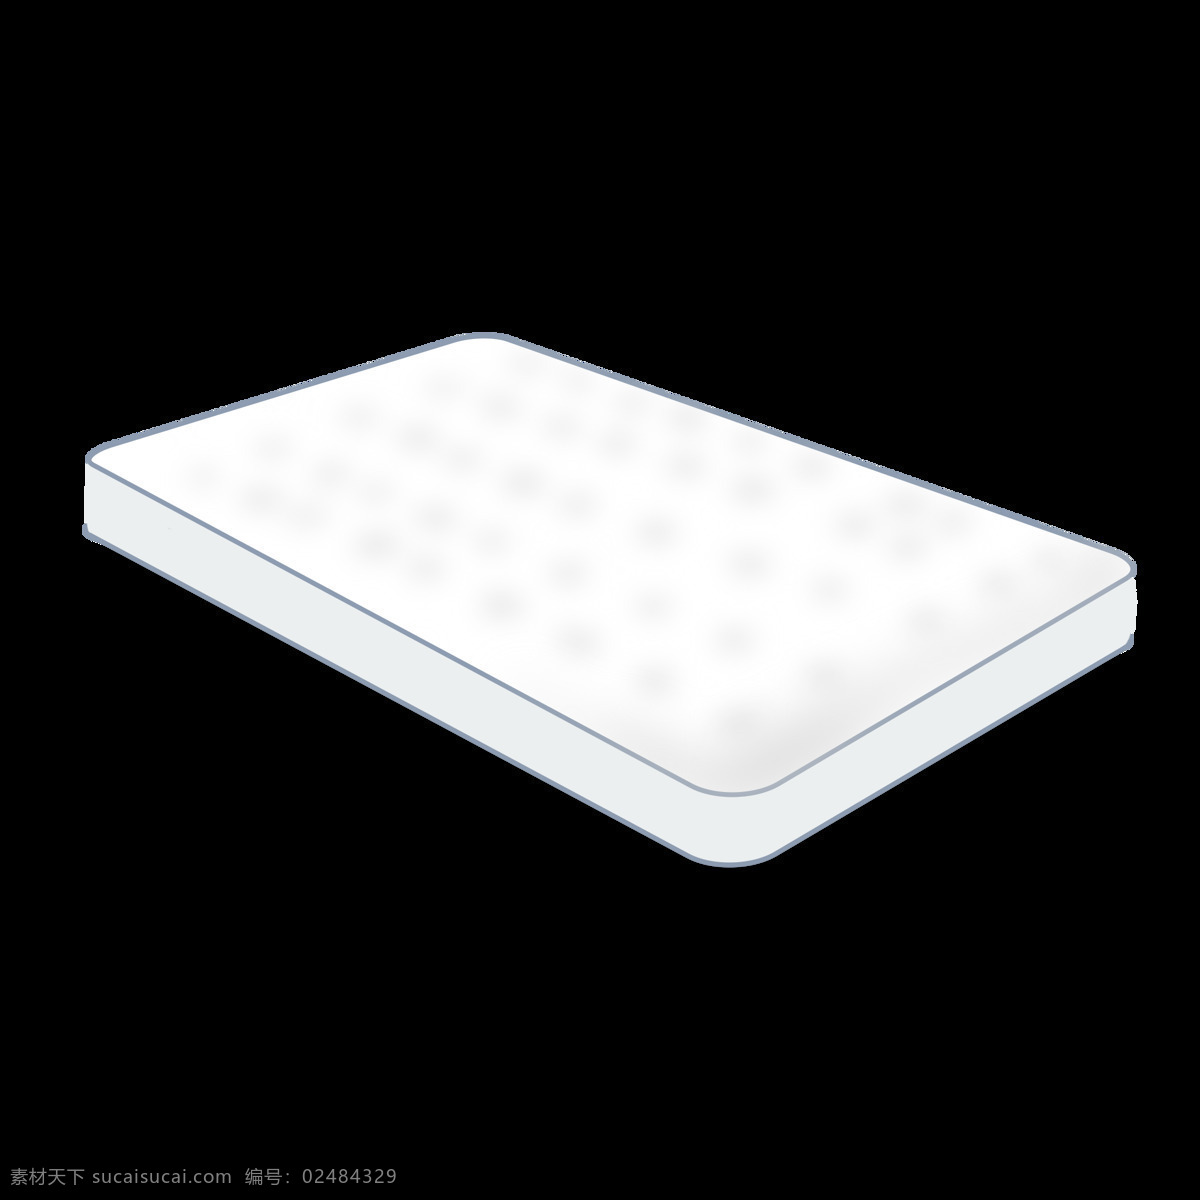 弹簧乳胶床垫 弹簧 乳胶床垫 床垫 白色 家具 可用 动漫动画